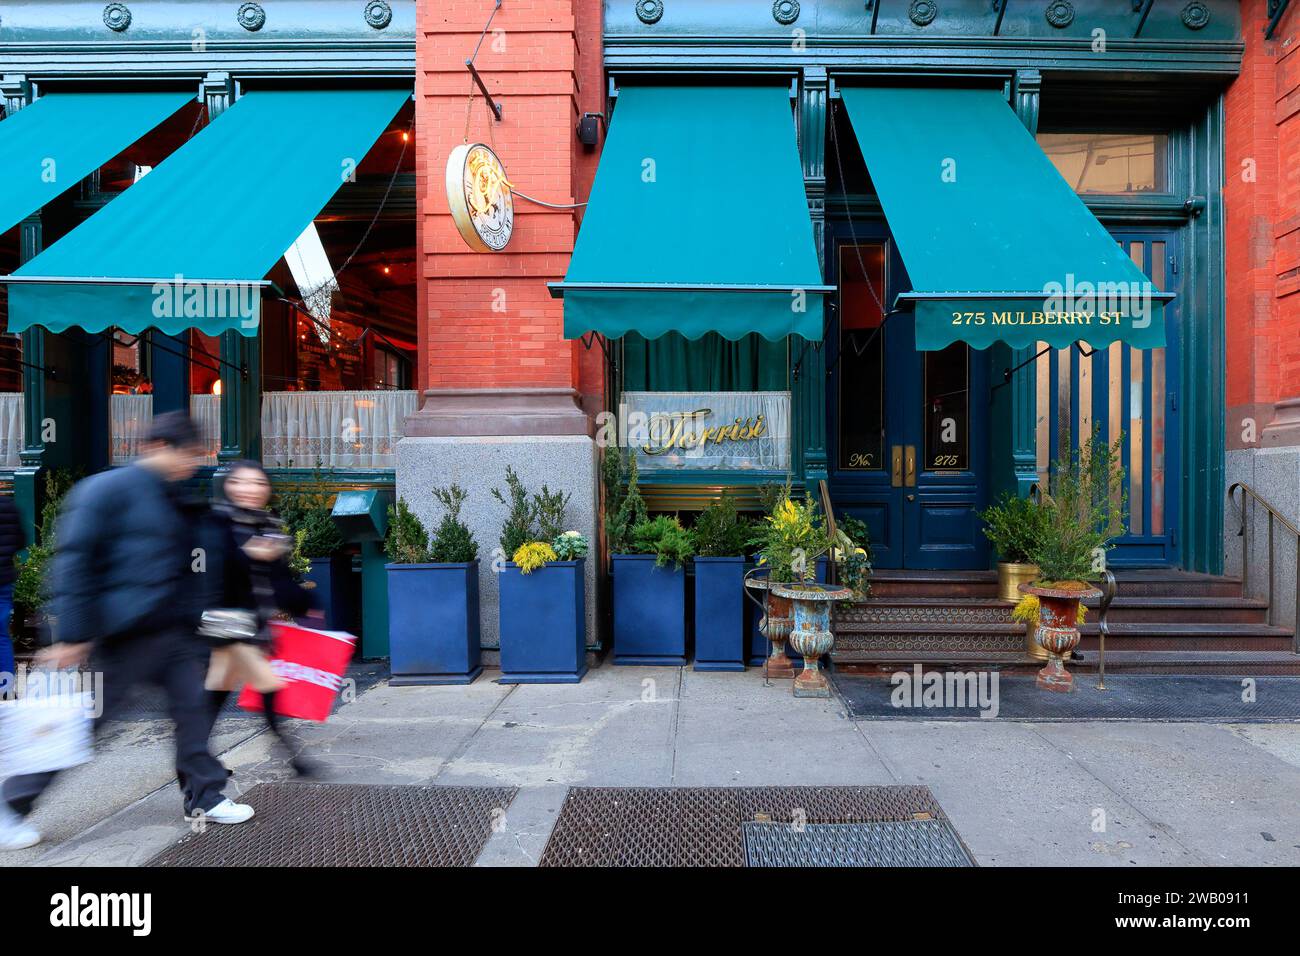 Torrisi, 275 Mulberry St, New York, NYC, Ladenfront eines italienischen Restaurants im Puck Building in Manhattans Stadtteil SoHo. Stockfoto